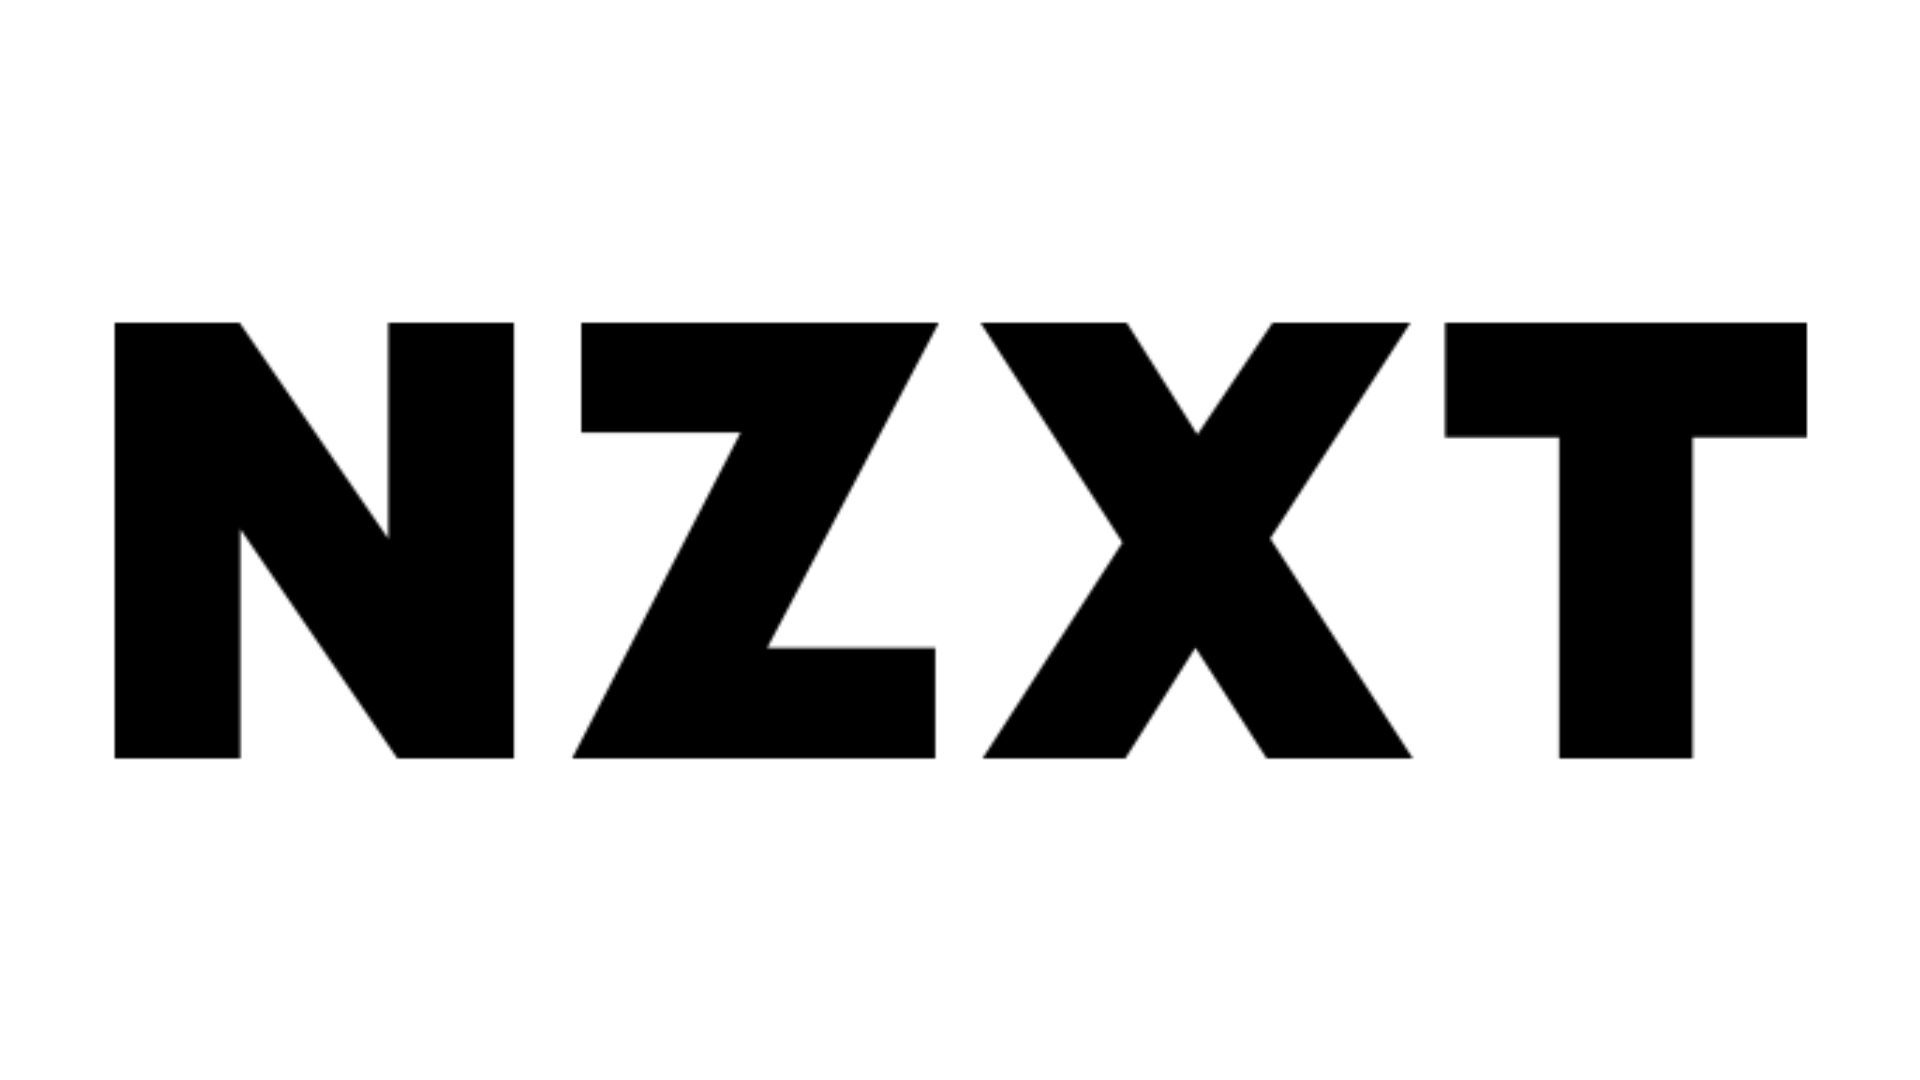 Beste Websites für benutzerdefinierte PC -Builds, Nummer 2: NZXT. Das Logo ist auf schwarzem Hintergrund